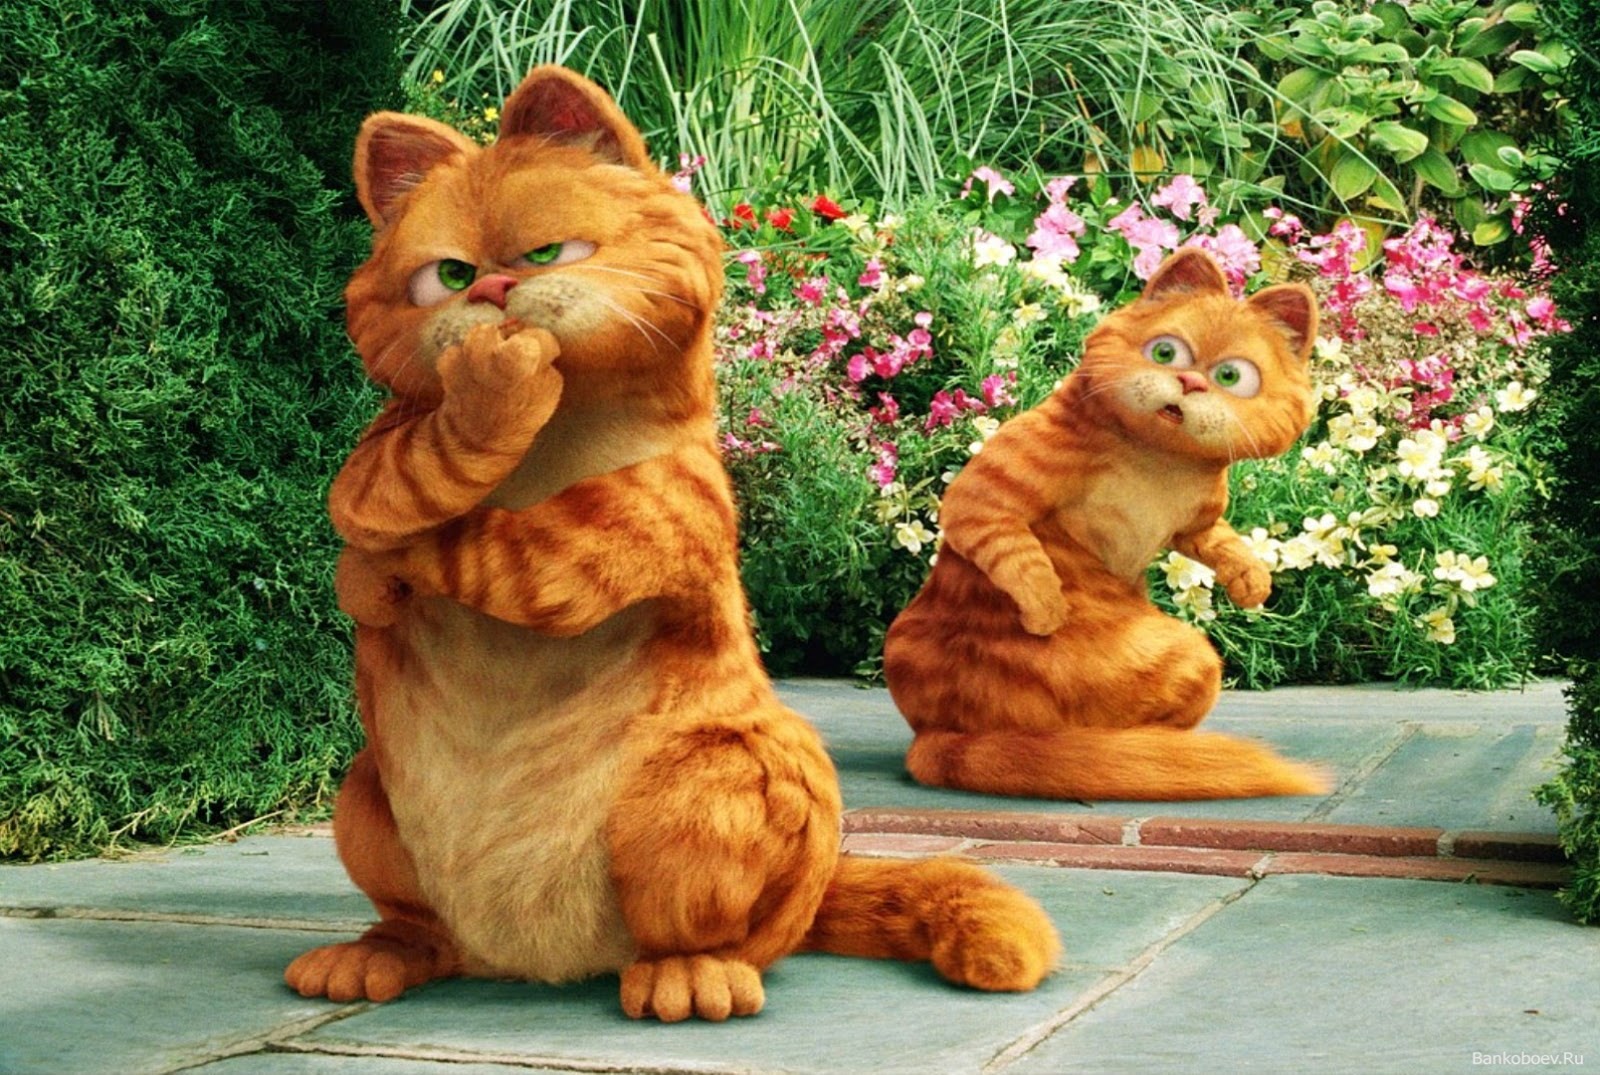 Kumpulan Gambar Lucu Kartun Kucing Gambar Gokil